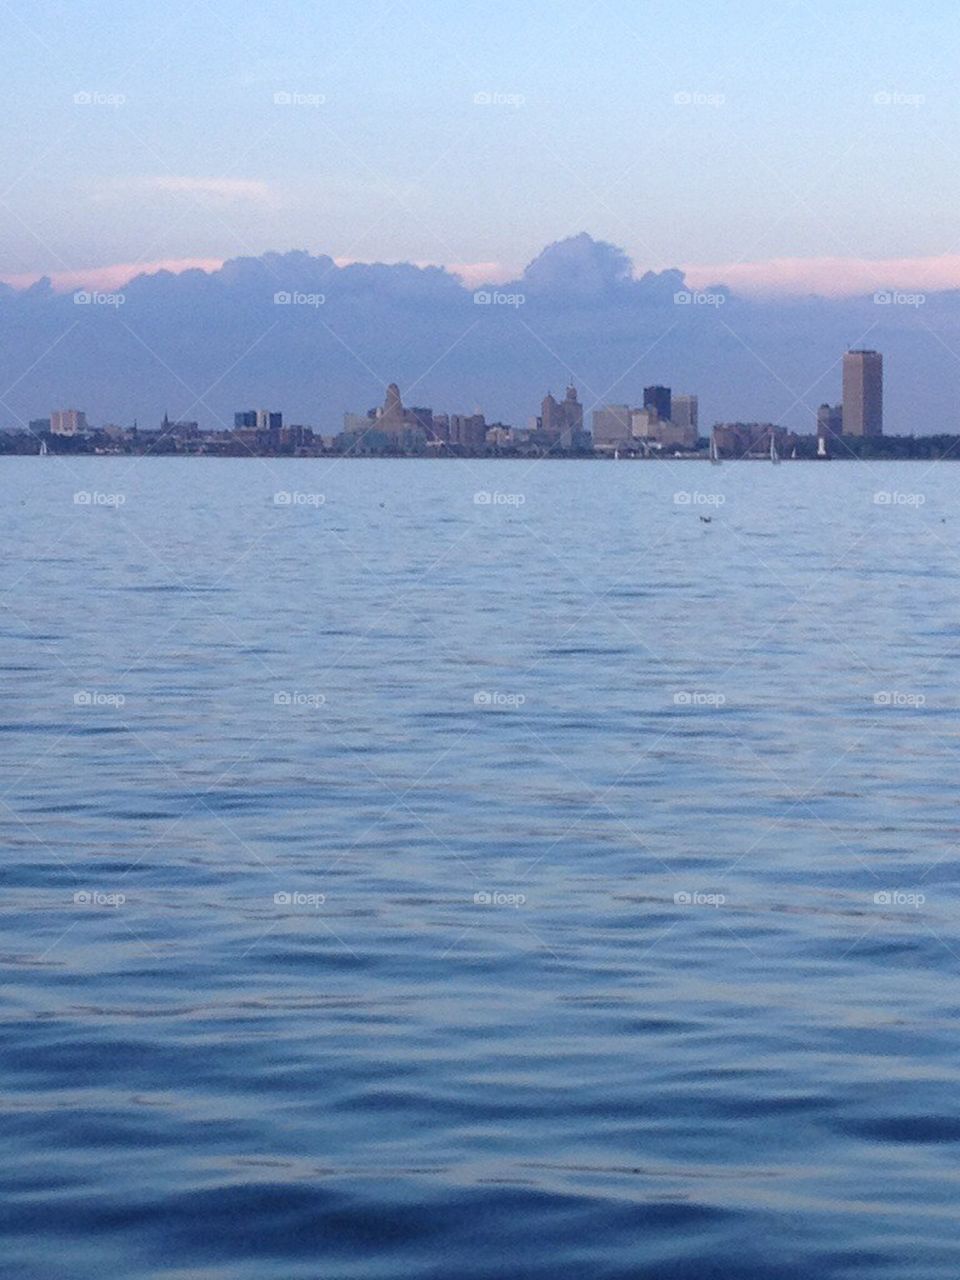 Buffalo skyline